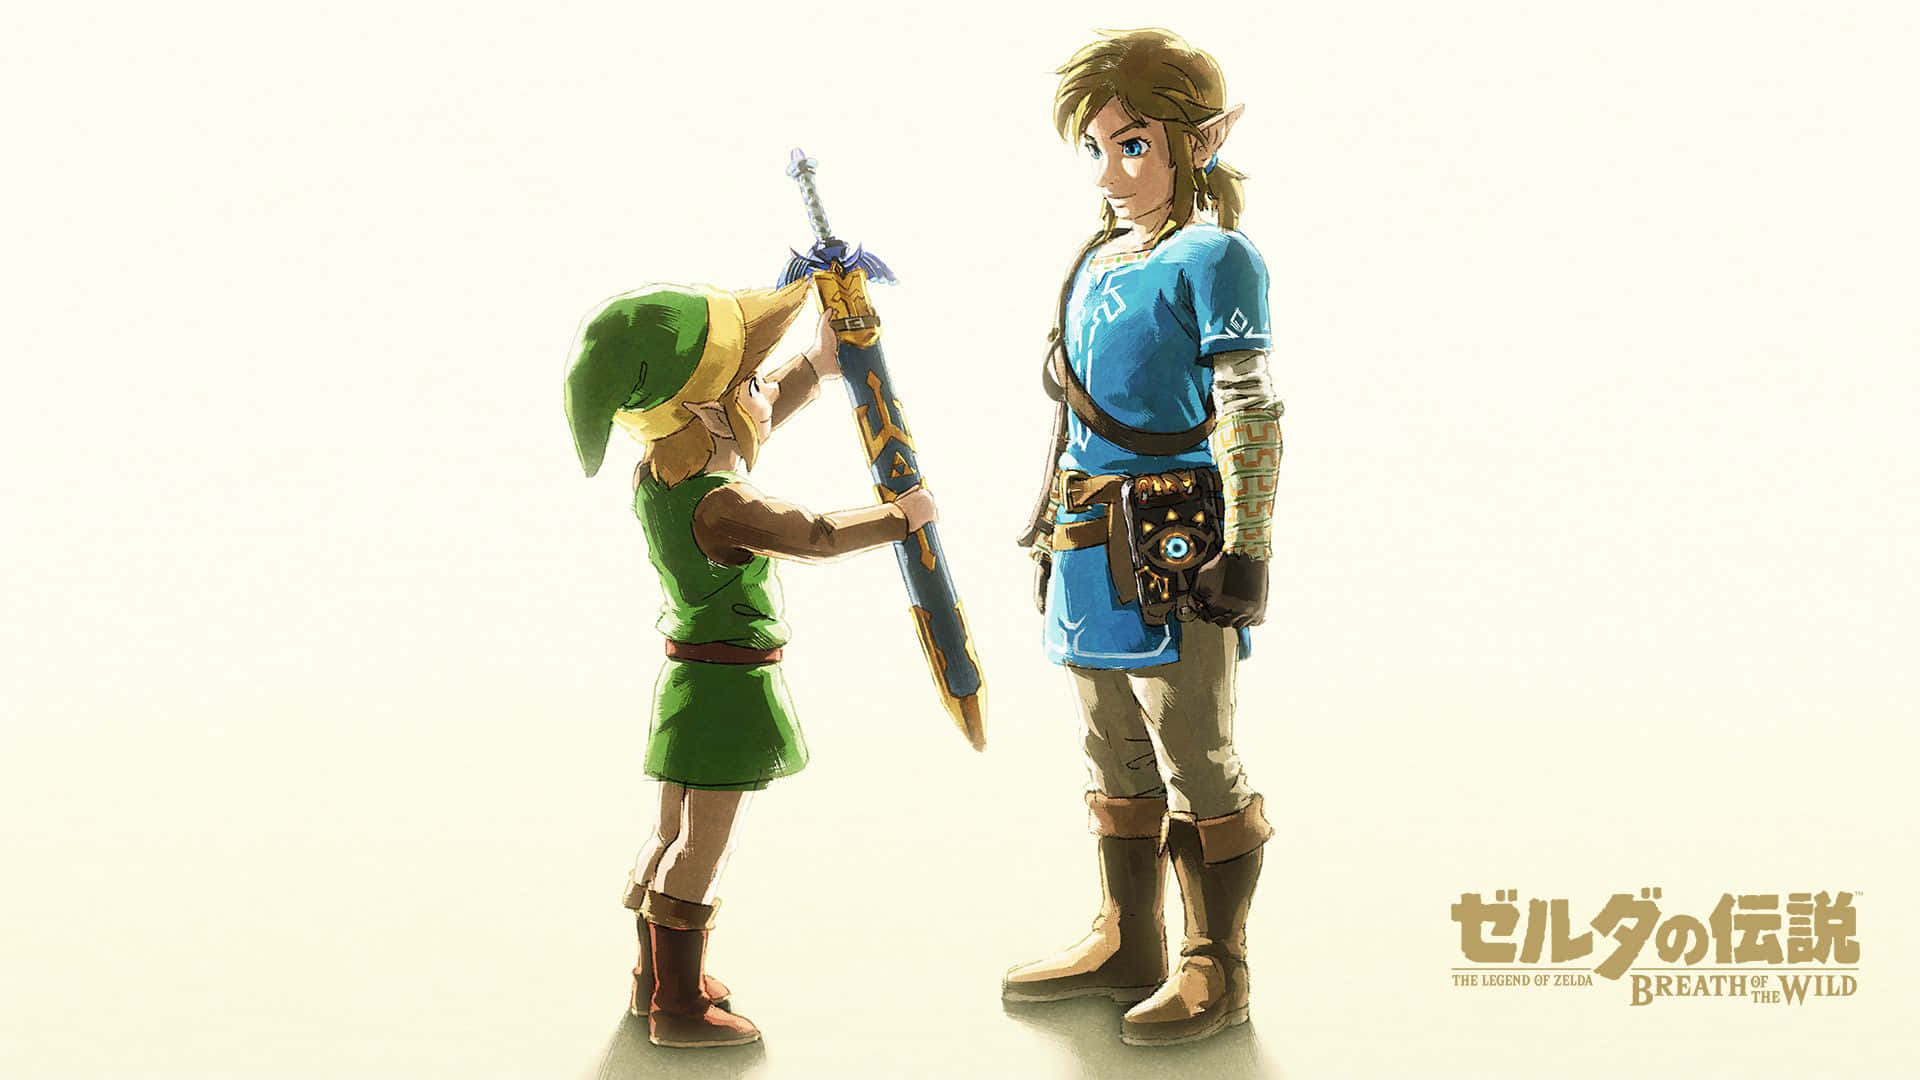 Zelda Botw Little Link Giving Sword To Big Link Wallpaper